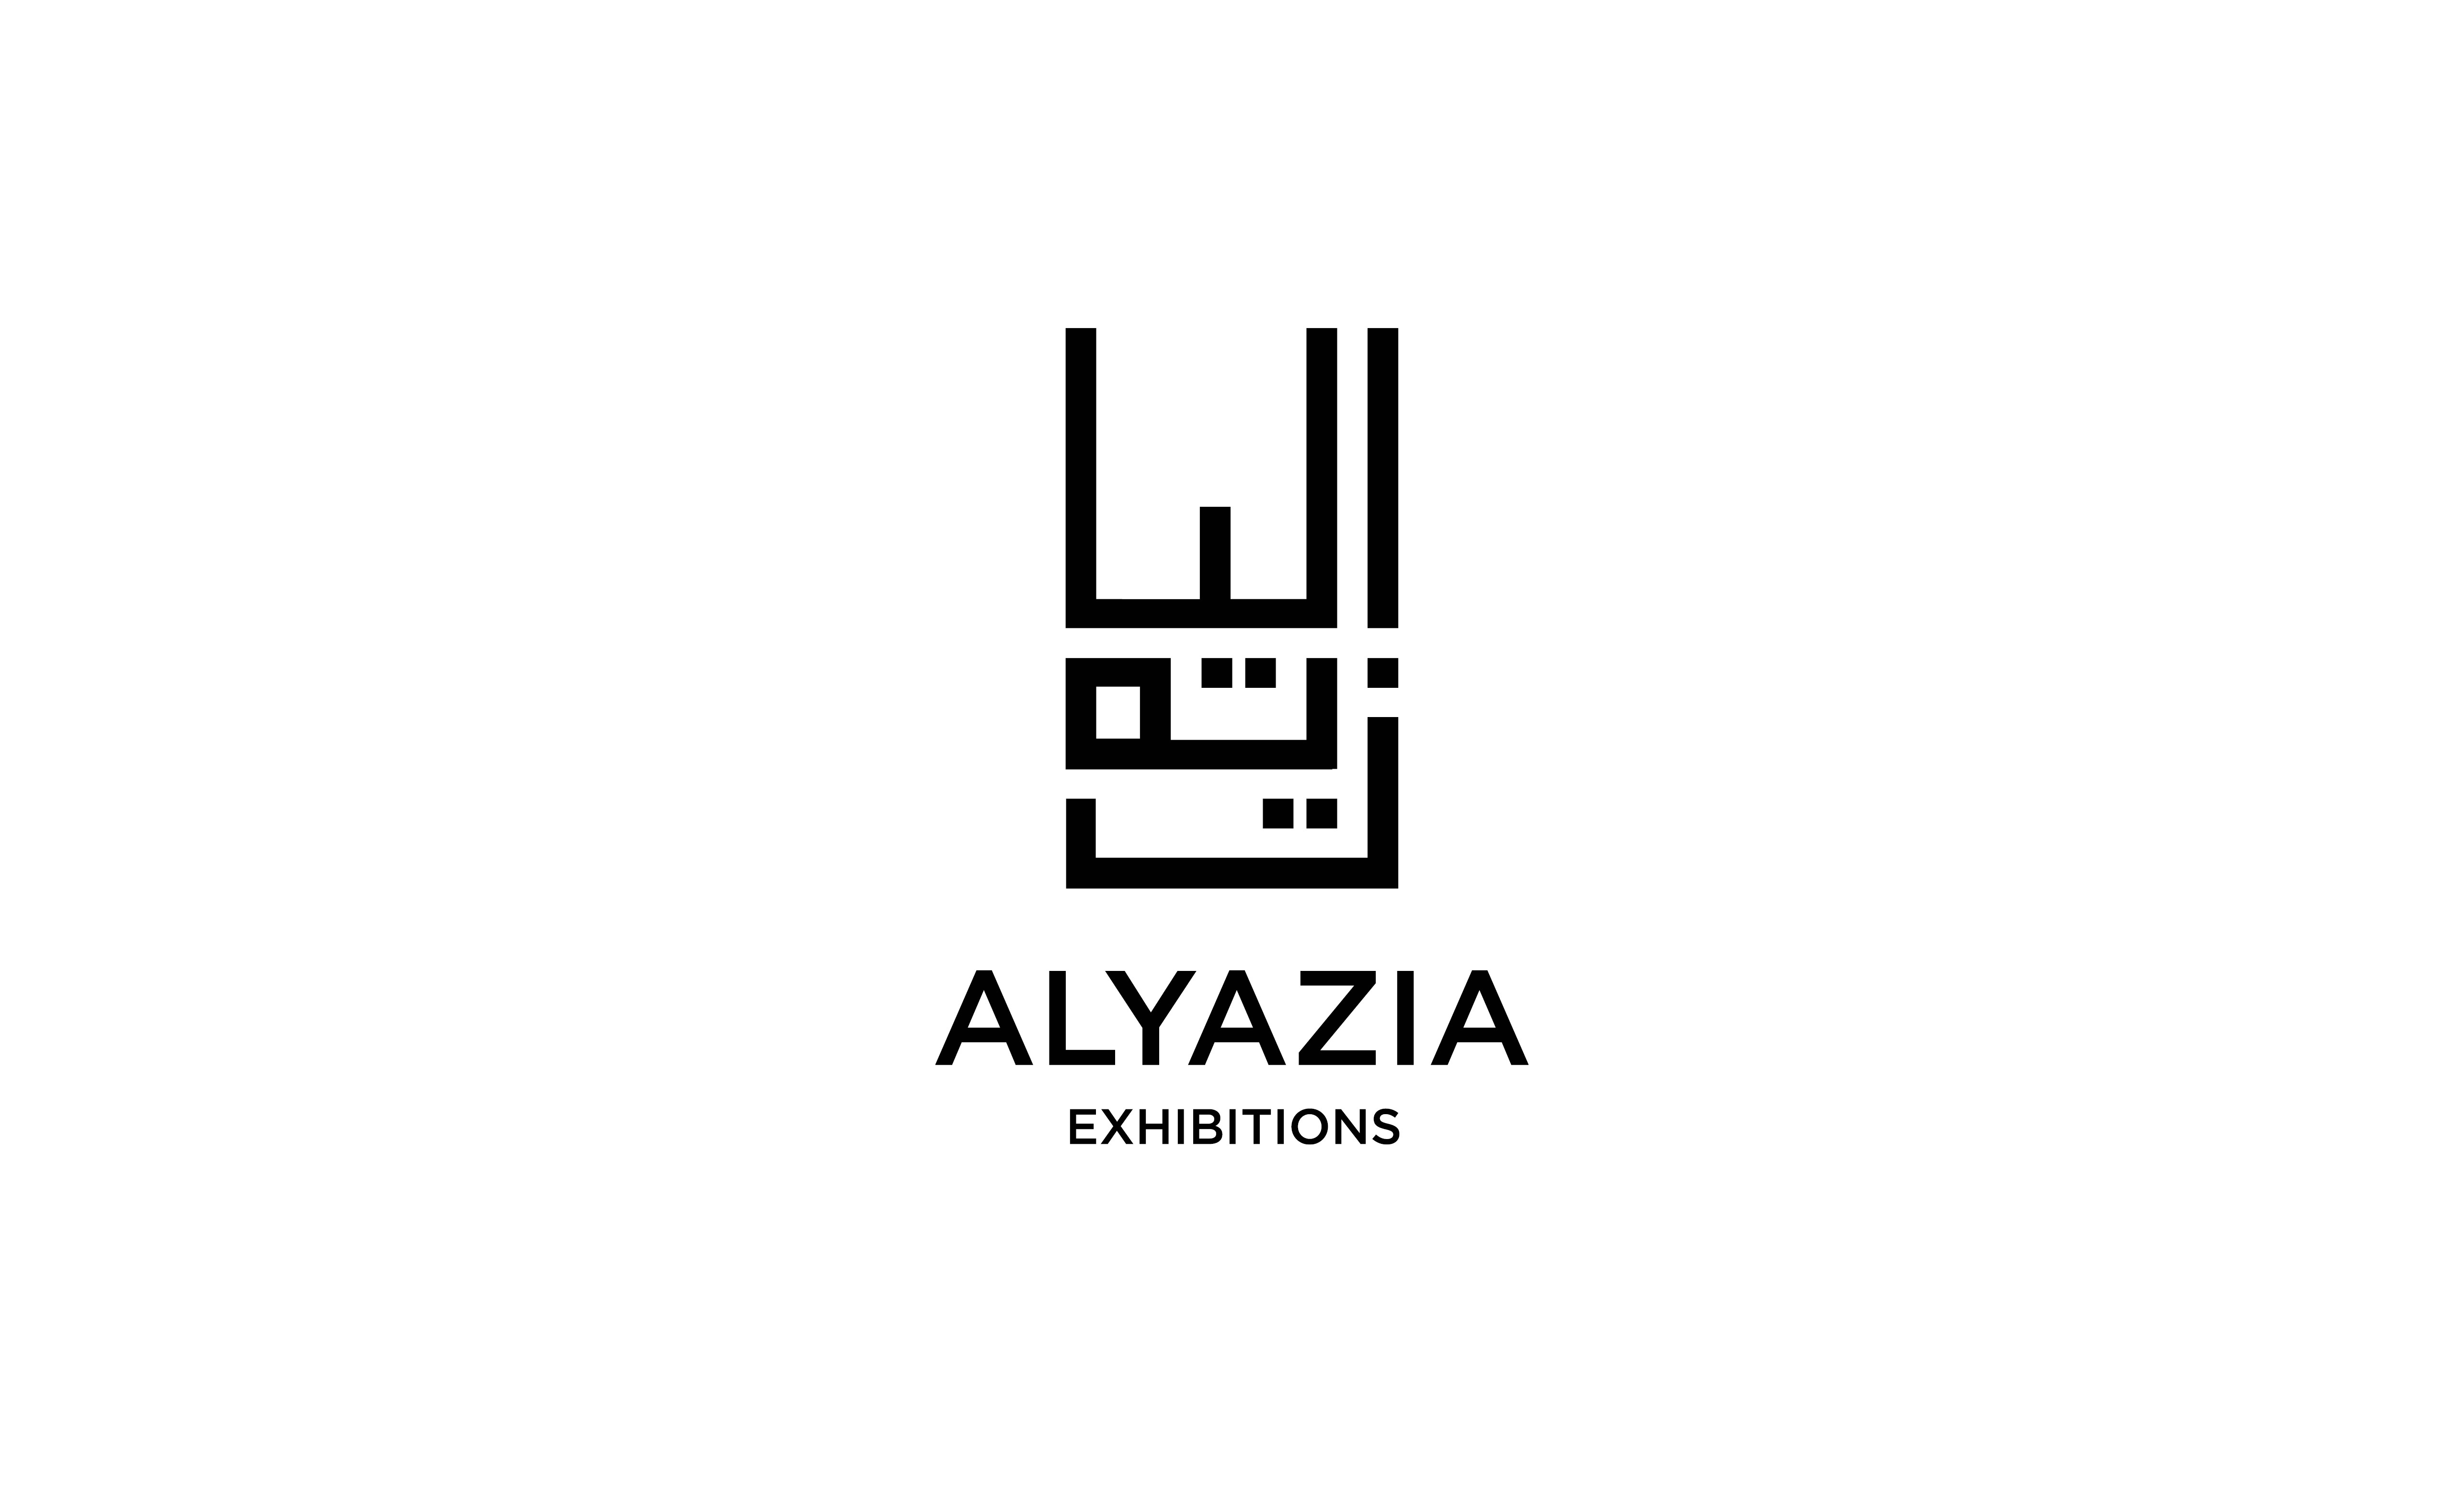 Al Yazia Exhibition Featured Image